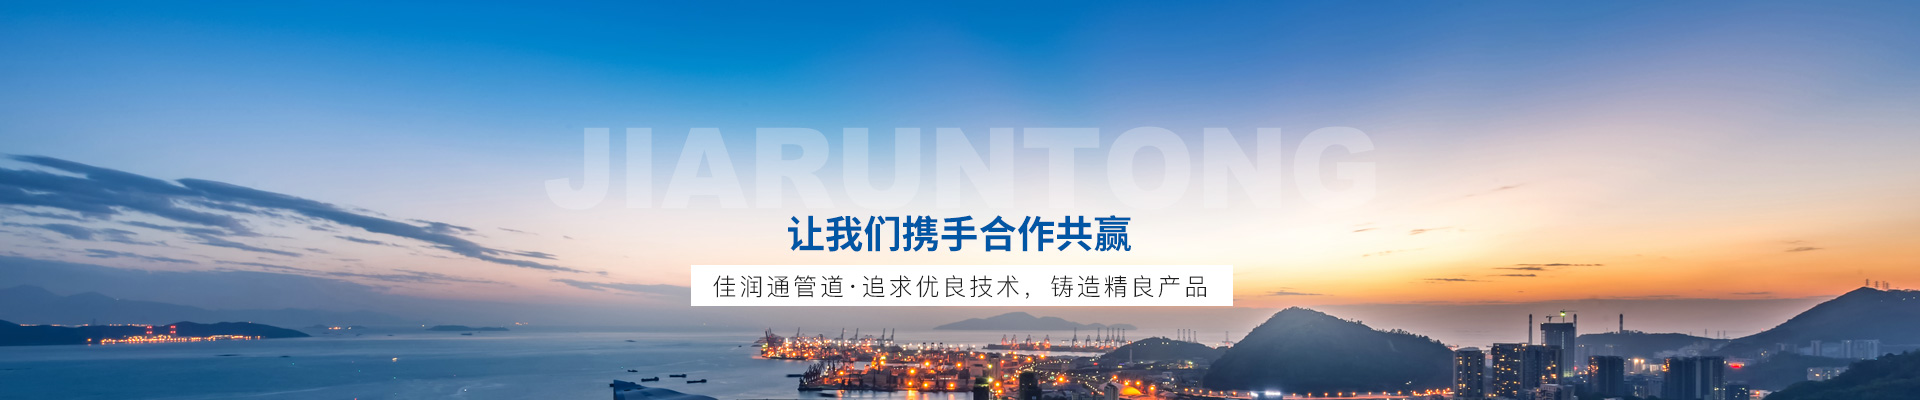 陕西华达（301517）新股概览9月27日开始网上申购